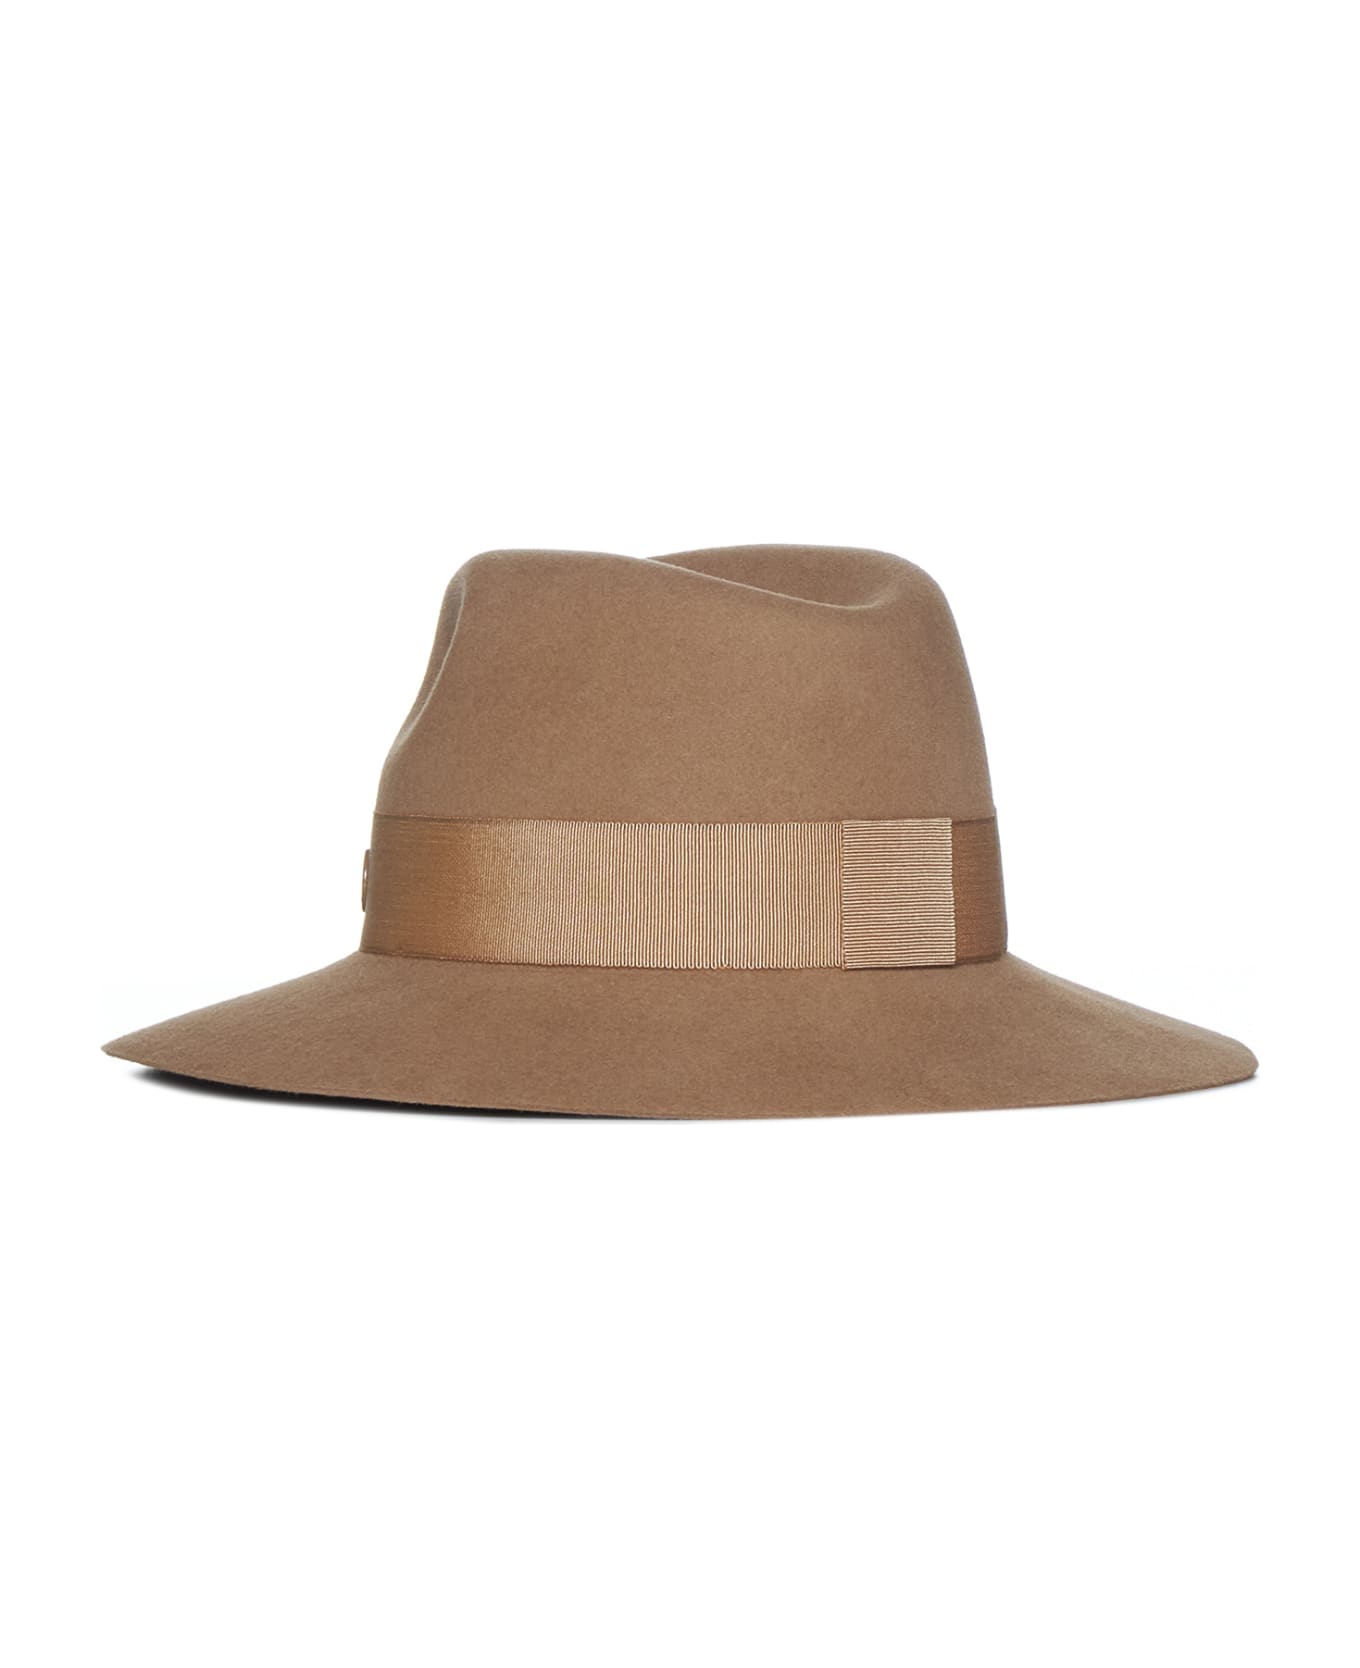 Maison Michel Hat - Camel 帽子